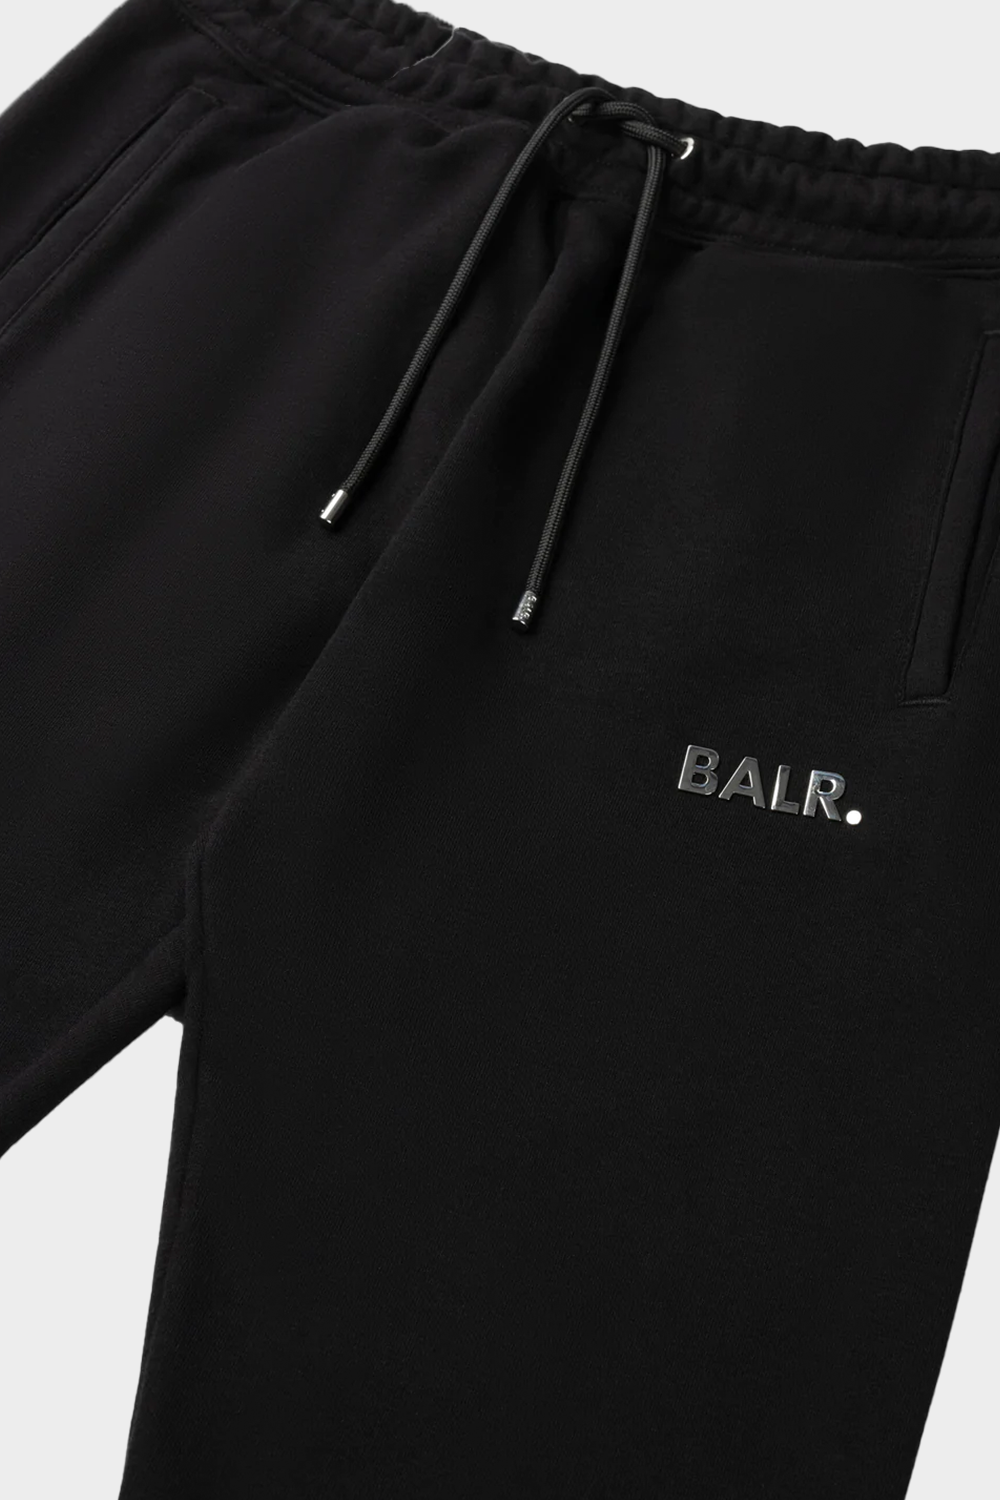 מכנסי טרנינג לגברים בצבע שחור BALR Vendome online | ונדום .